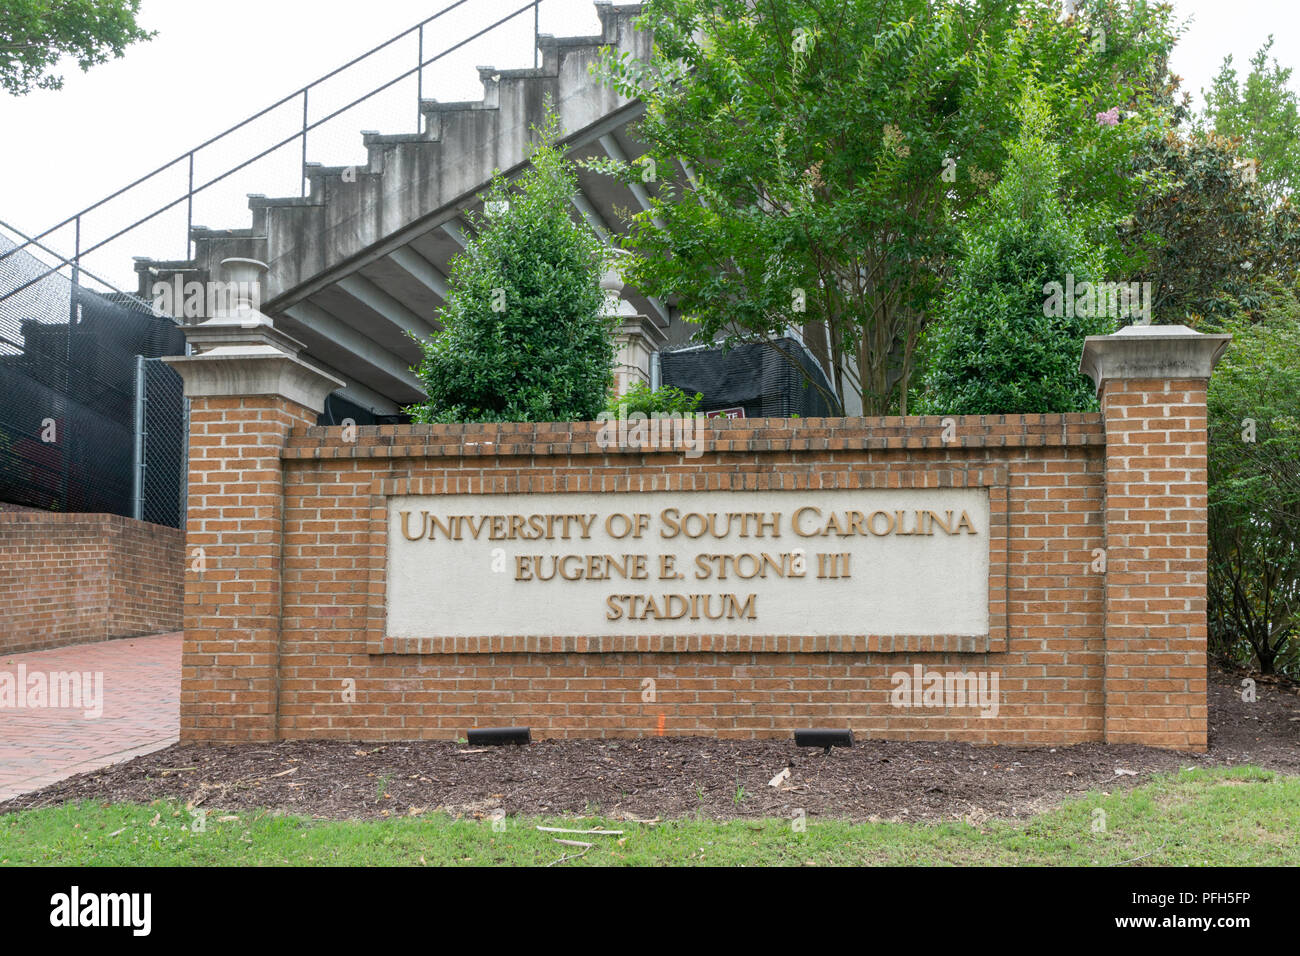 COLUMBIA, SC/USA Juni 5, 2018: Eugene E. Stein III Stadium auf dem Campus der Universität von South Carolina. Stockfoto